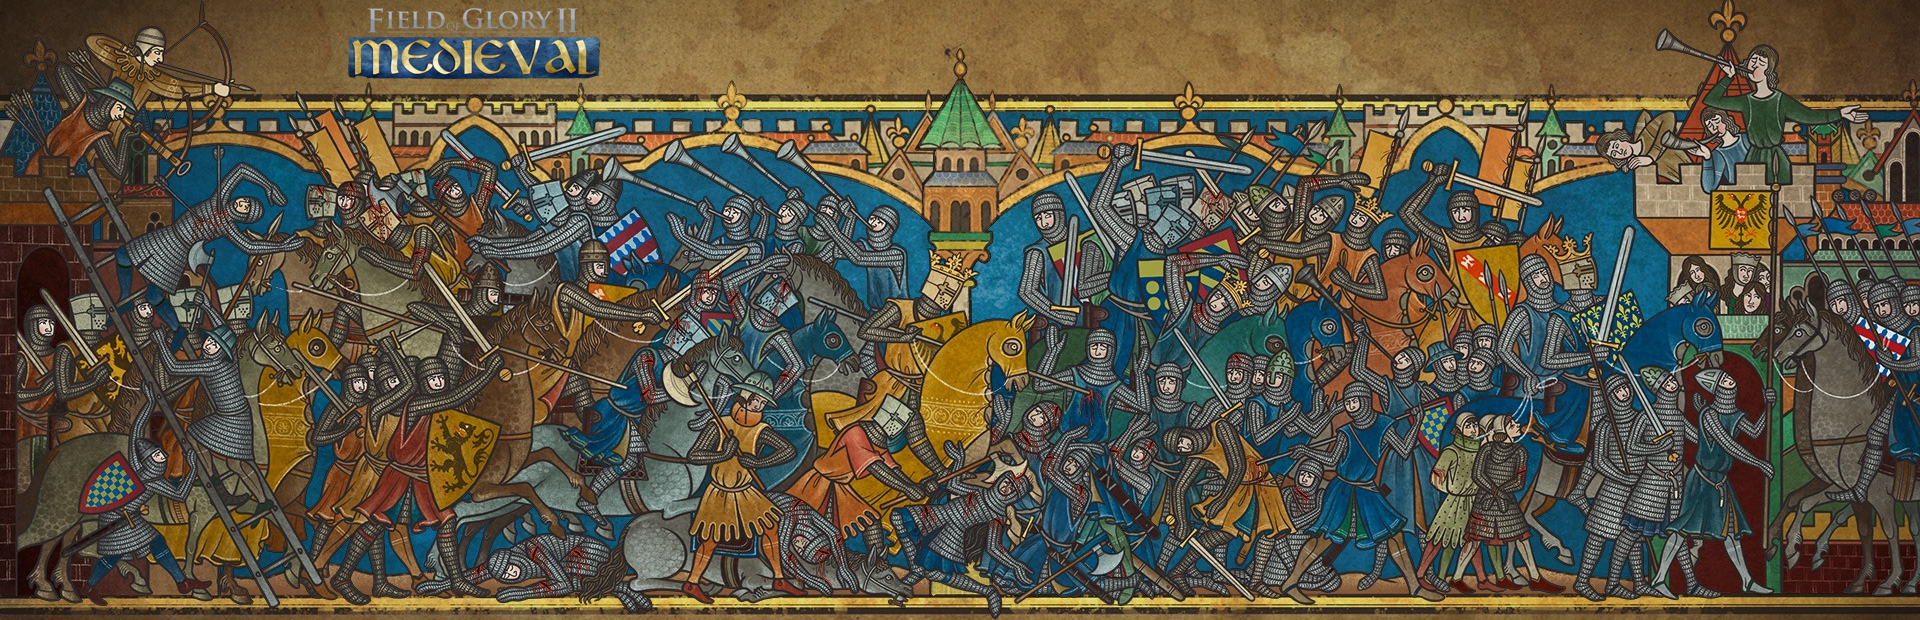 دانلود بازی Field of Glory II: Medieval برای پی سی | گیمباتو